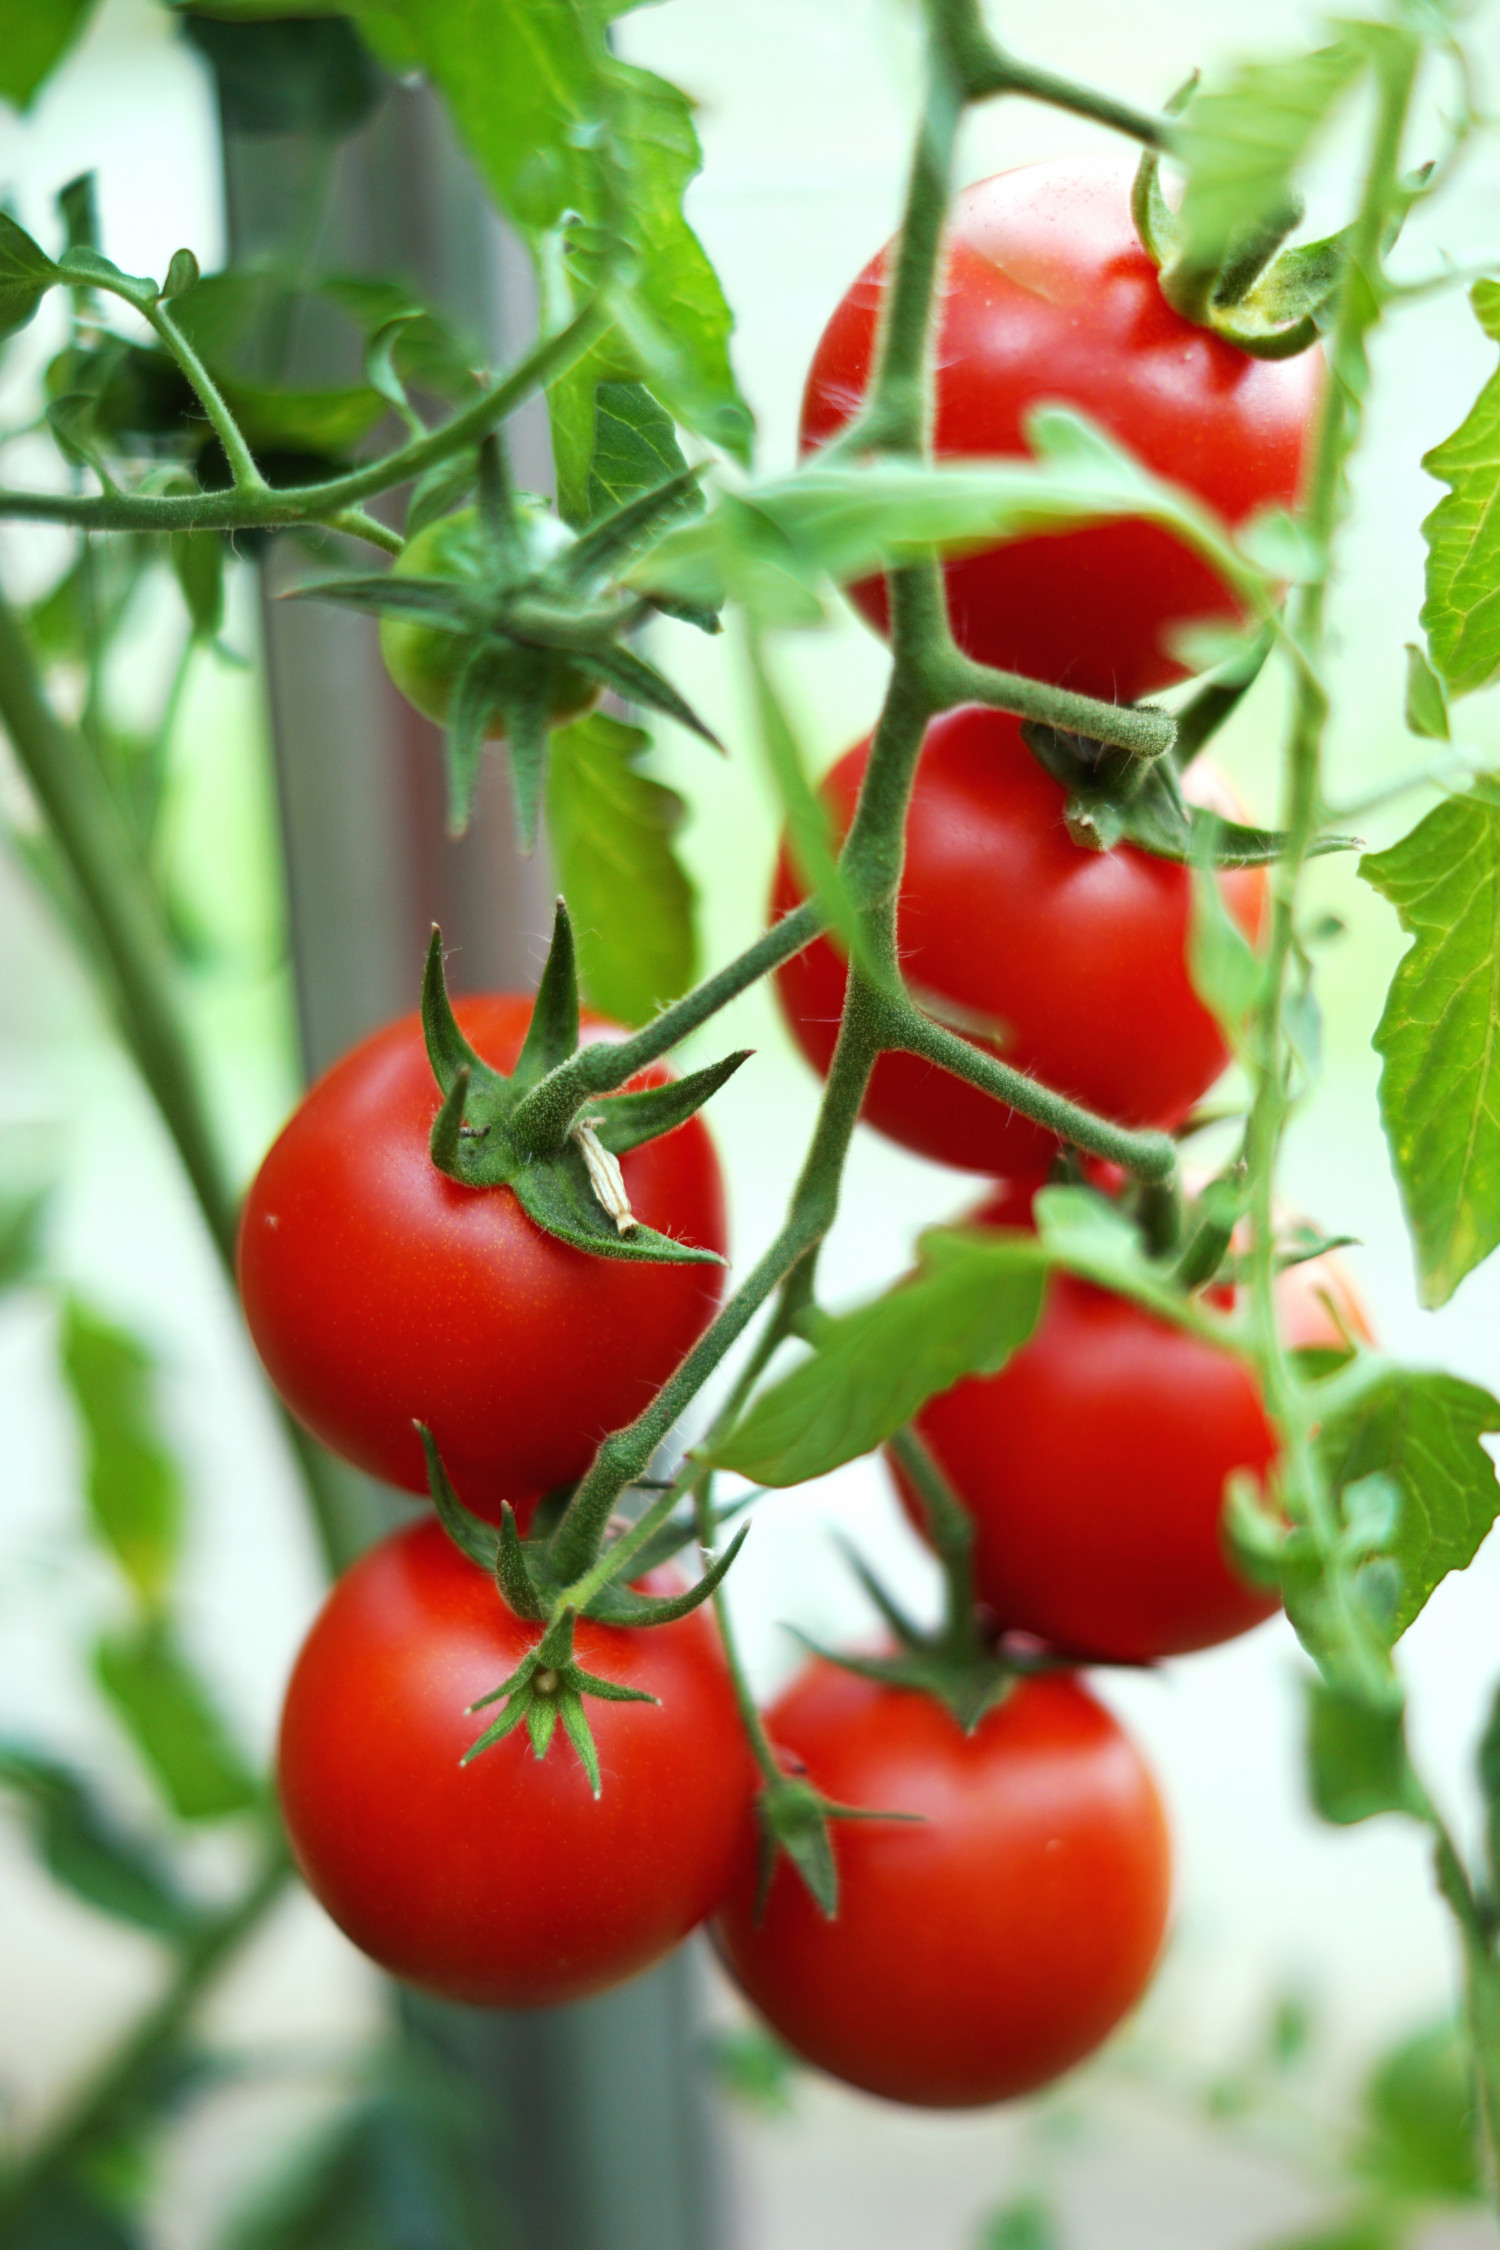 Forspiring og dyrkning af tomater (begynder introduktion) | Haven |  Forstadsmor